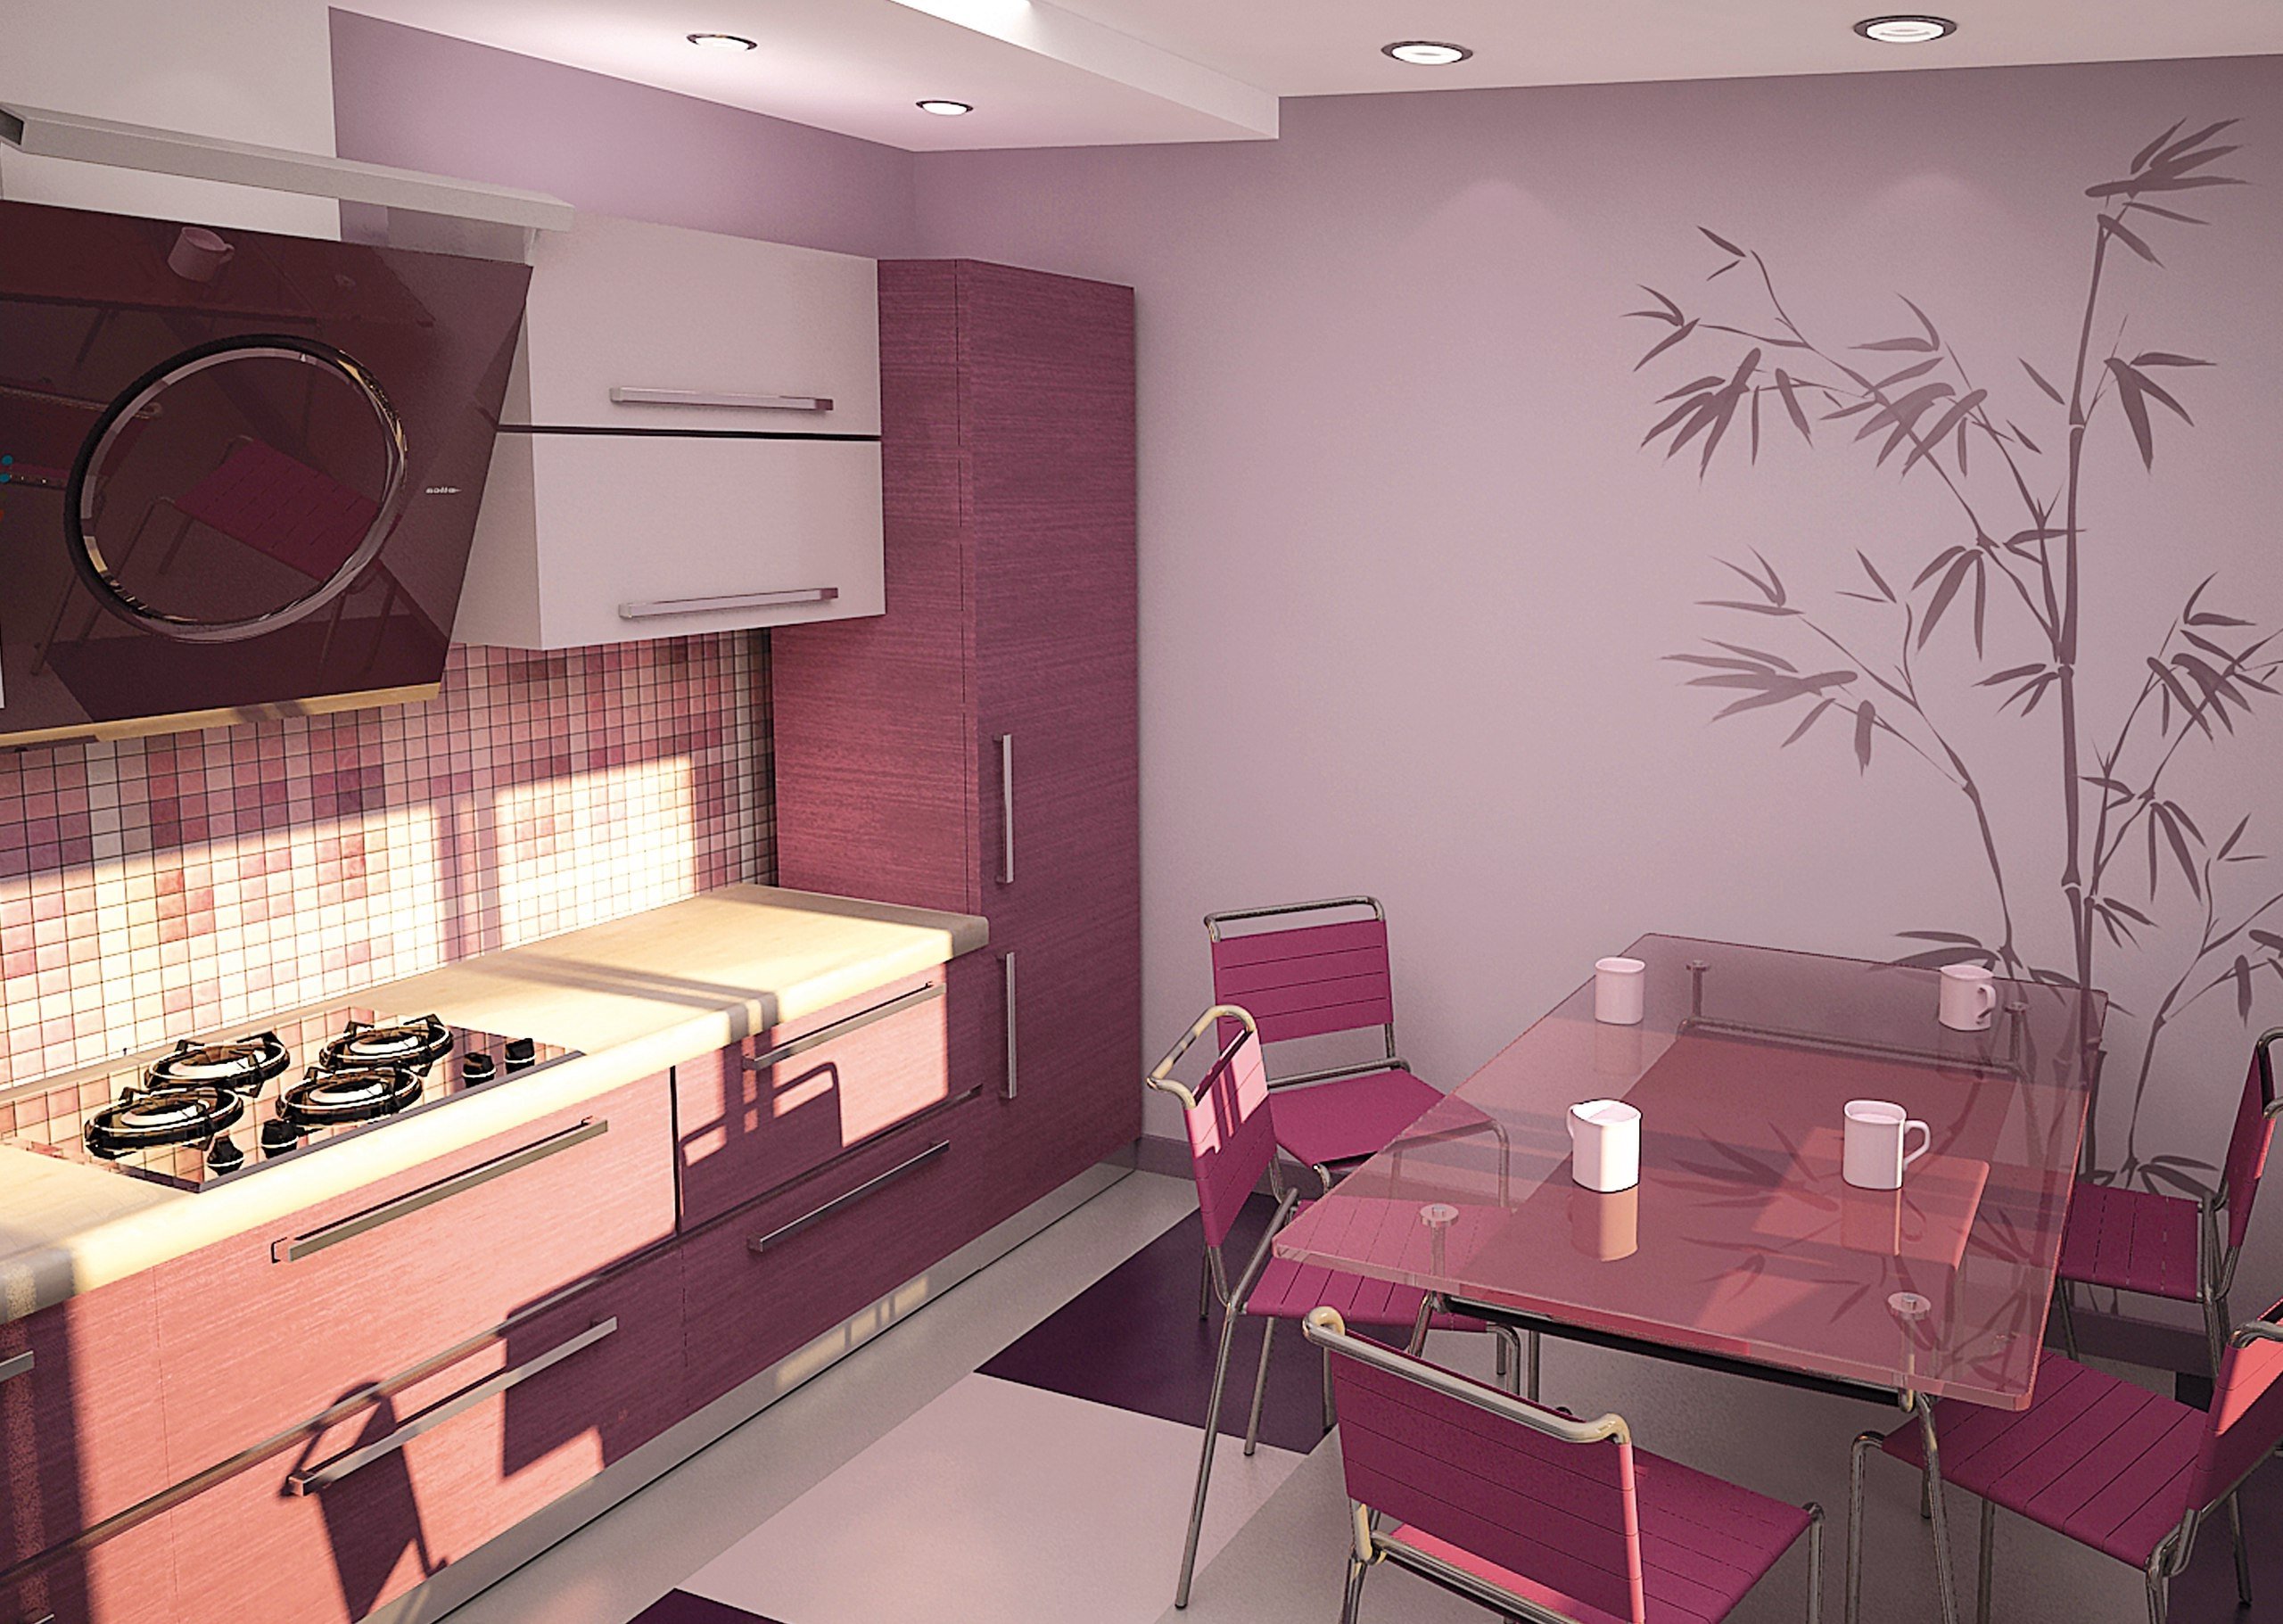 Ремонт на кухне обои. Красивые стены на кухне. Окрашивание стен на кухне. Расцветка обоев для кухни. Розовая кухня в интерьере.